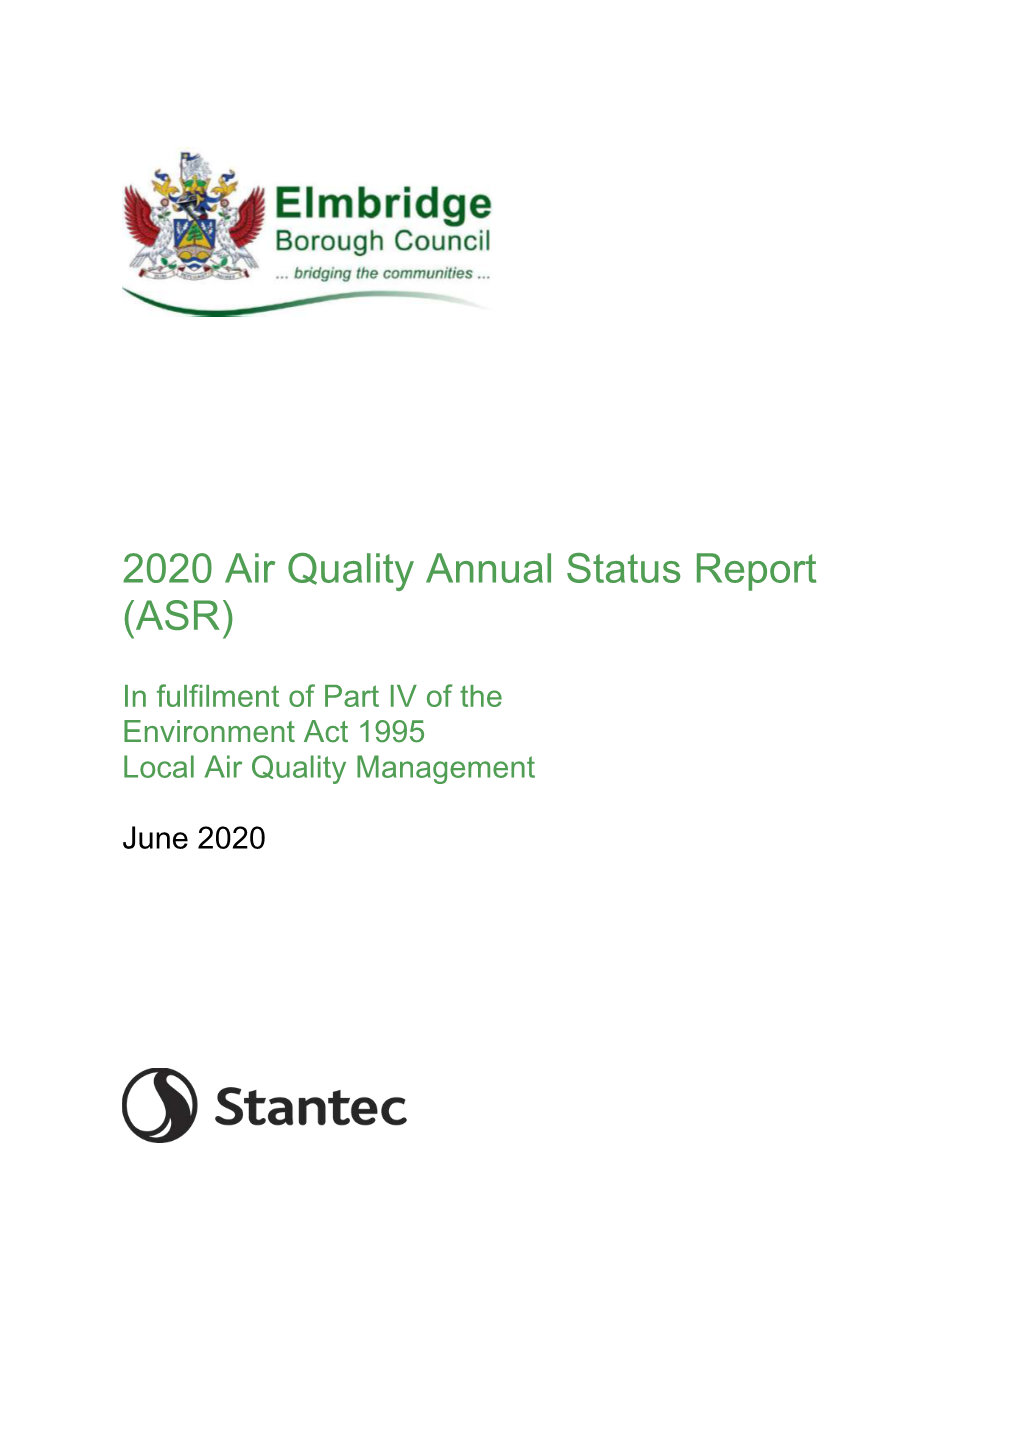 Elmbridge 2020 Air Quality Annual Status Report Final